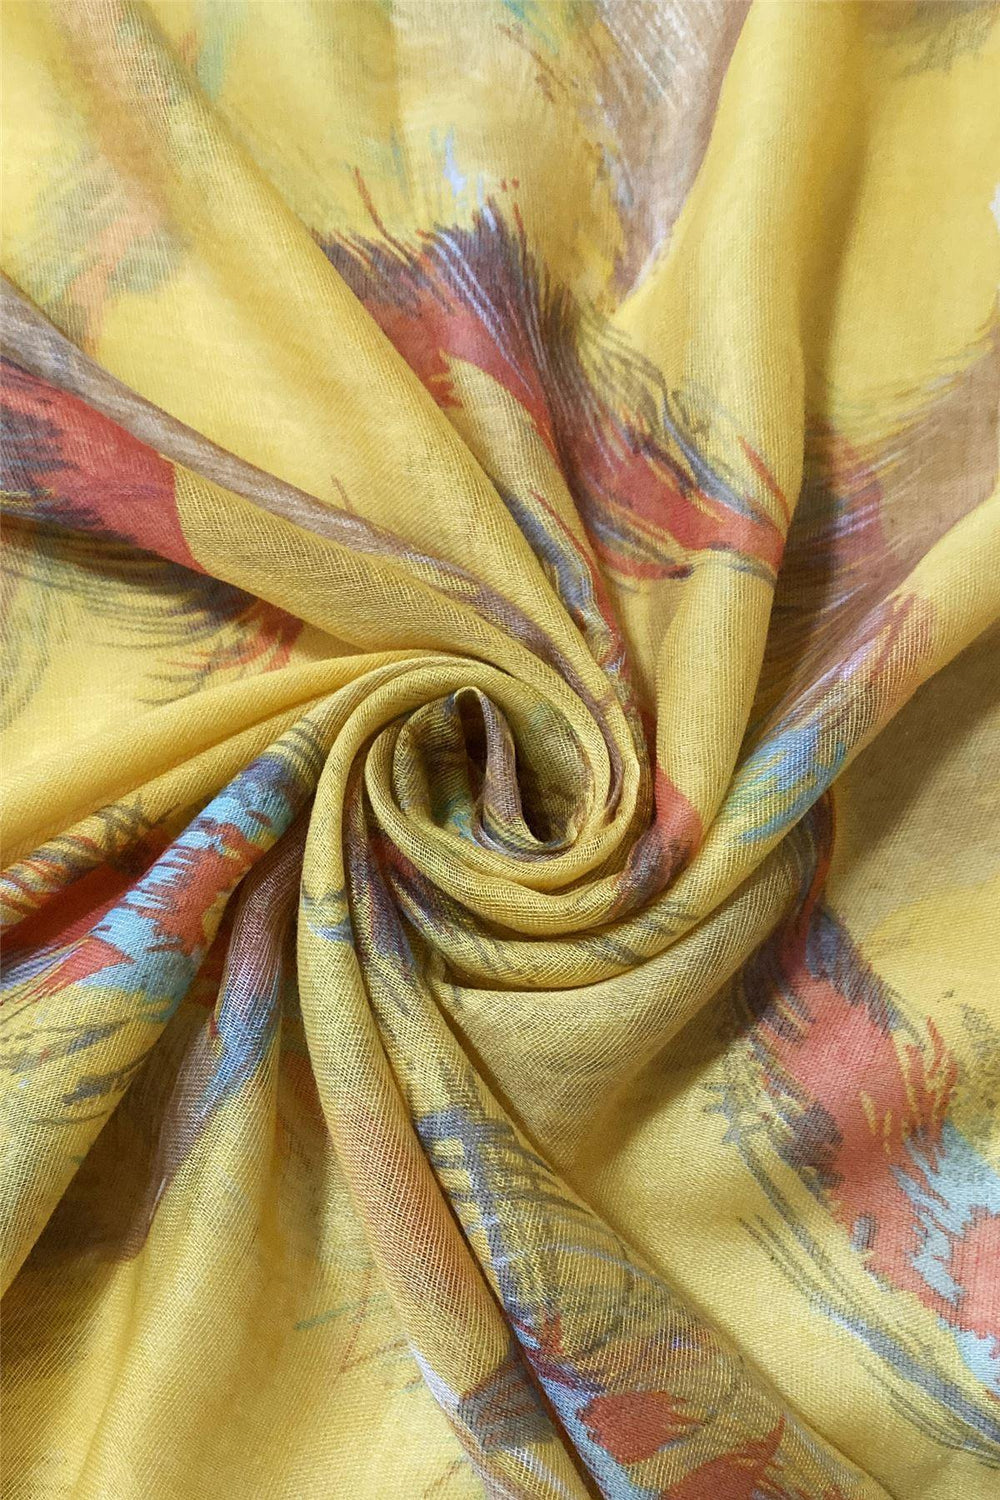 Šála-šátek s Motivem pera, žlutá, 90 cm x 180 cm - Multilady.cz